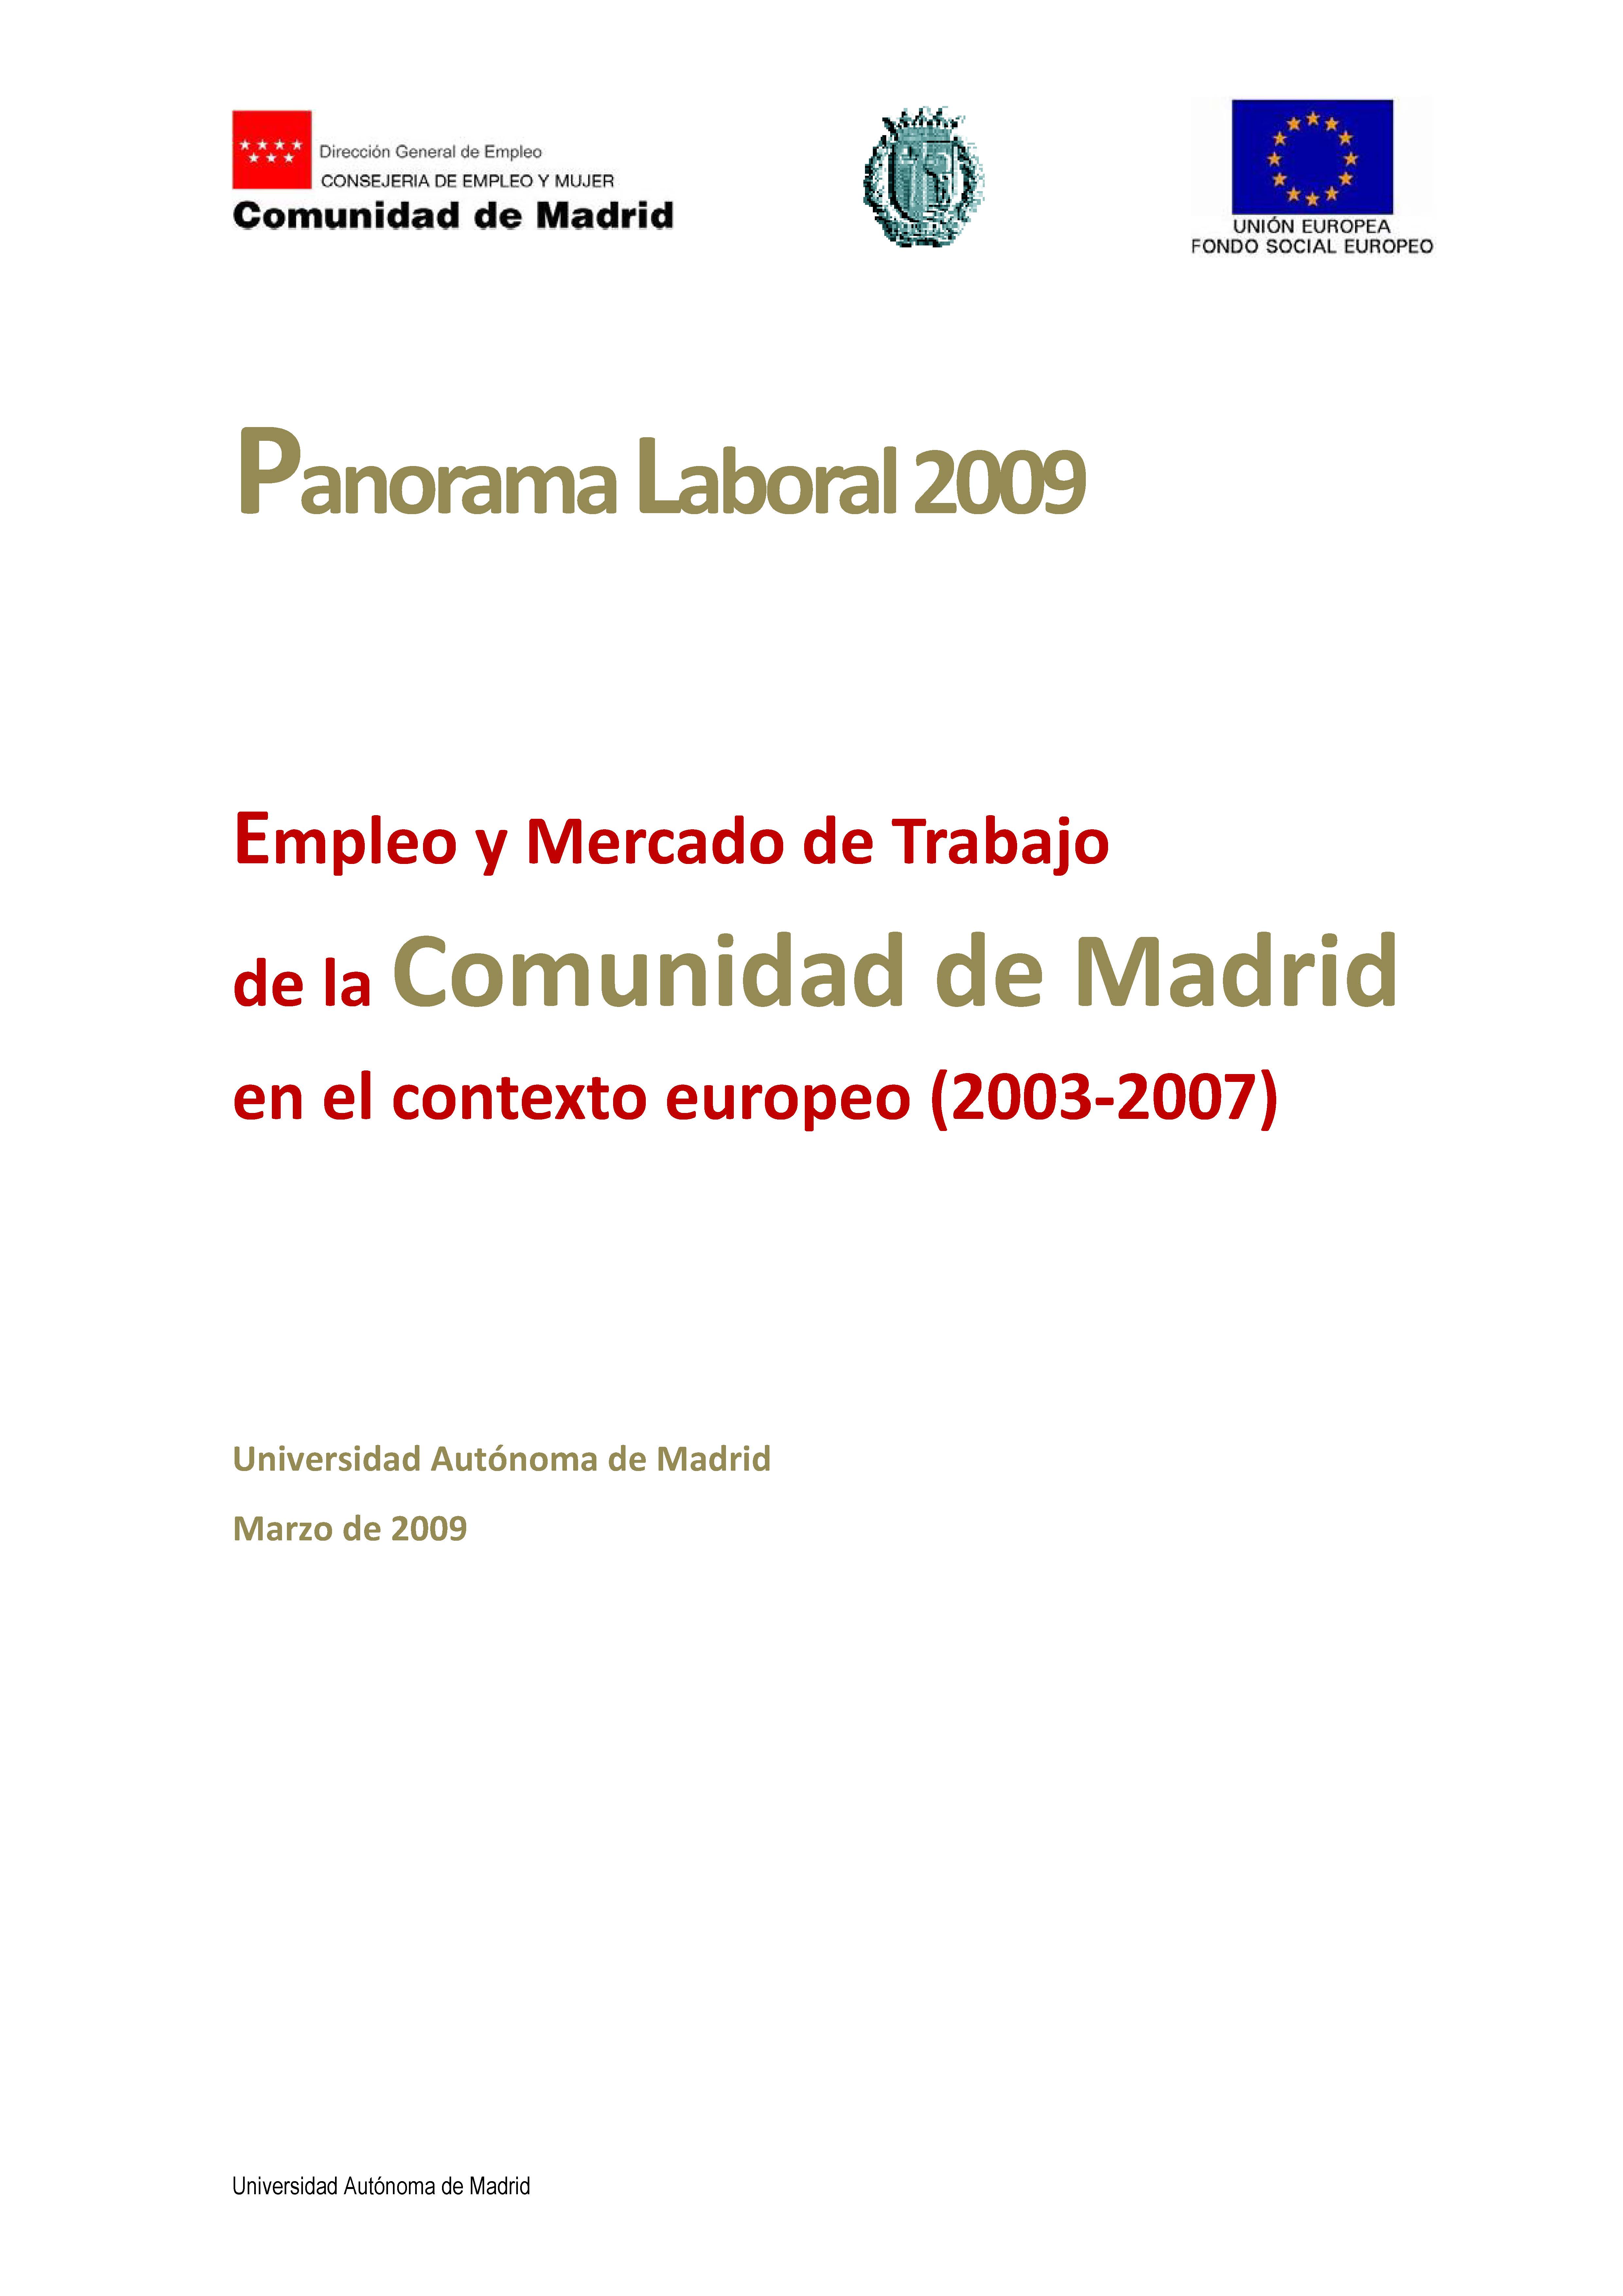 Portada de Panorama Laboral 2009. Mercado de trabajo en la Comunidad de Madrid una perspectiva europea, El